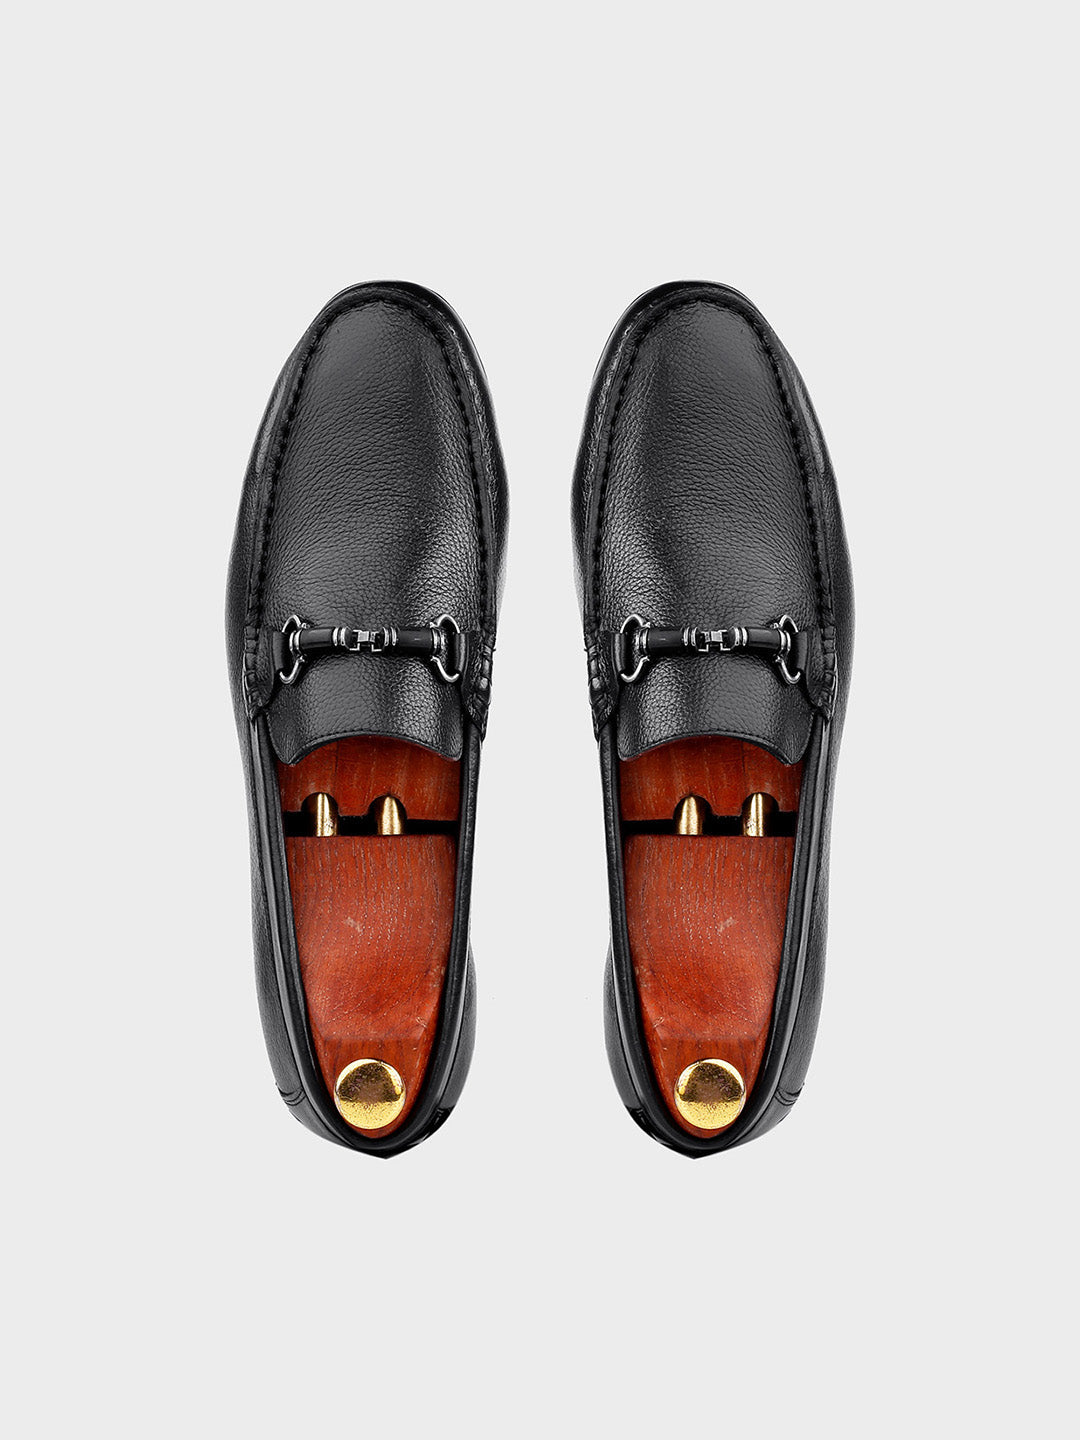 Black Leather Slip-on Loafer for Men